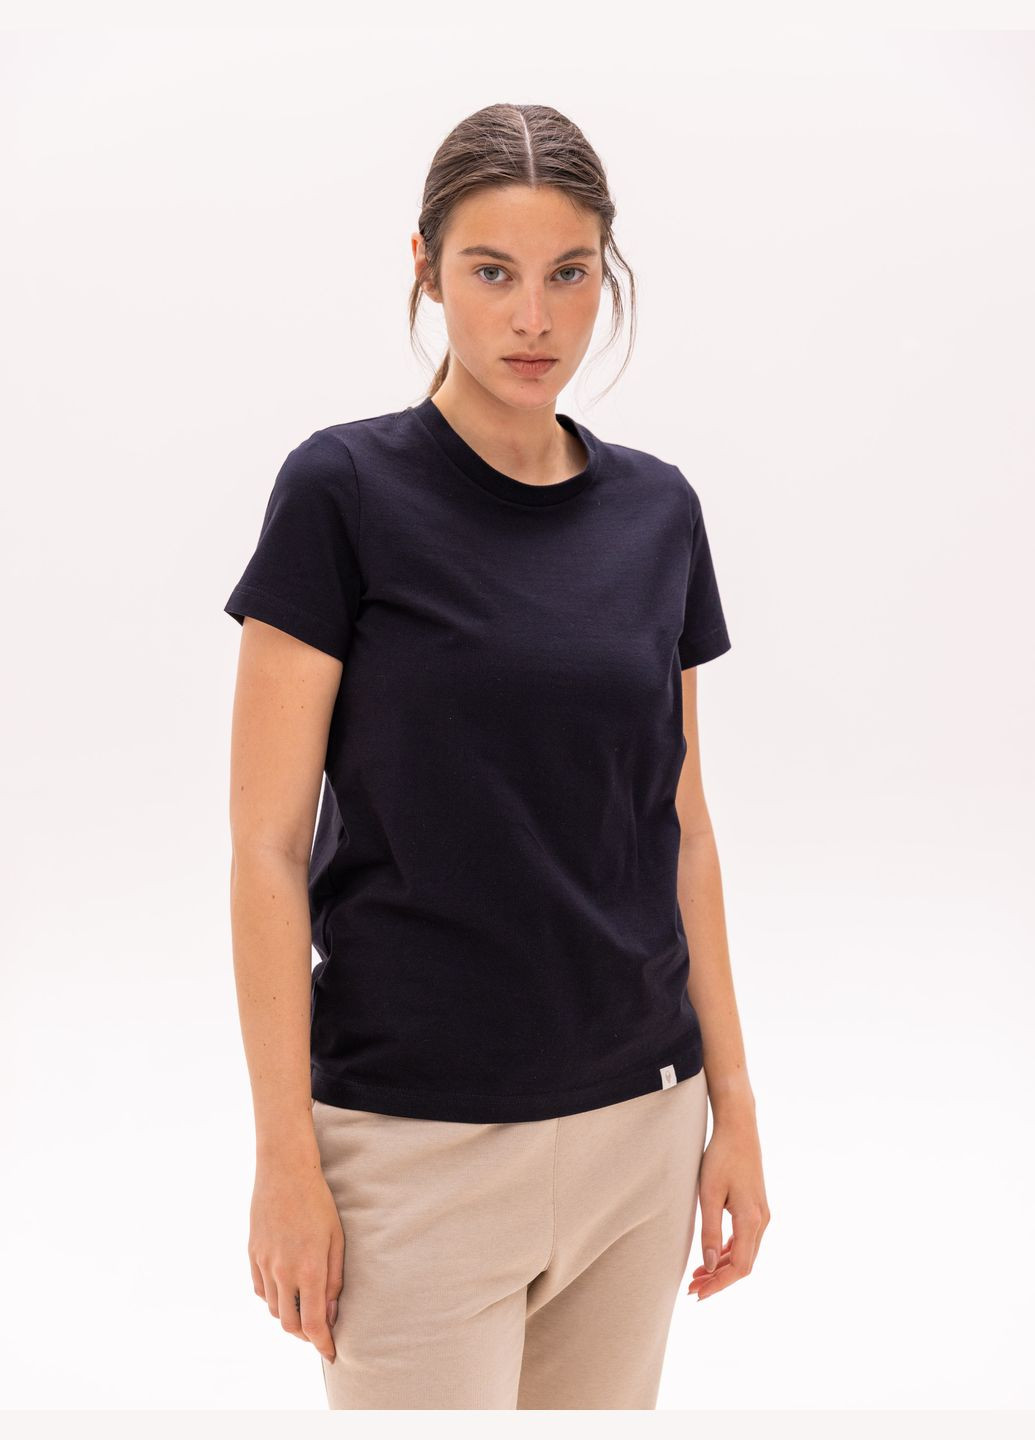 Черная летняя футболка женская базовая с коротким рукавом Роза